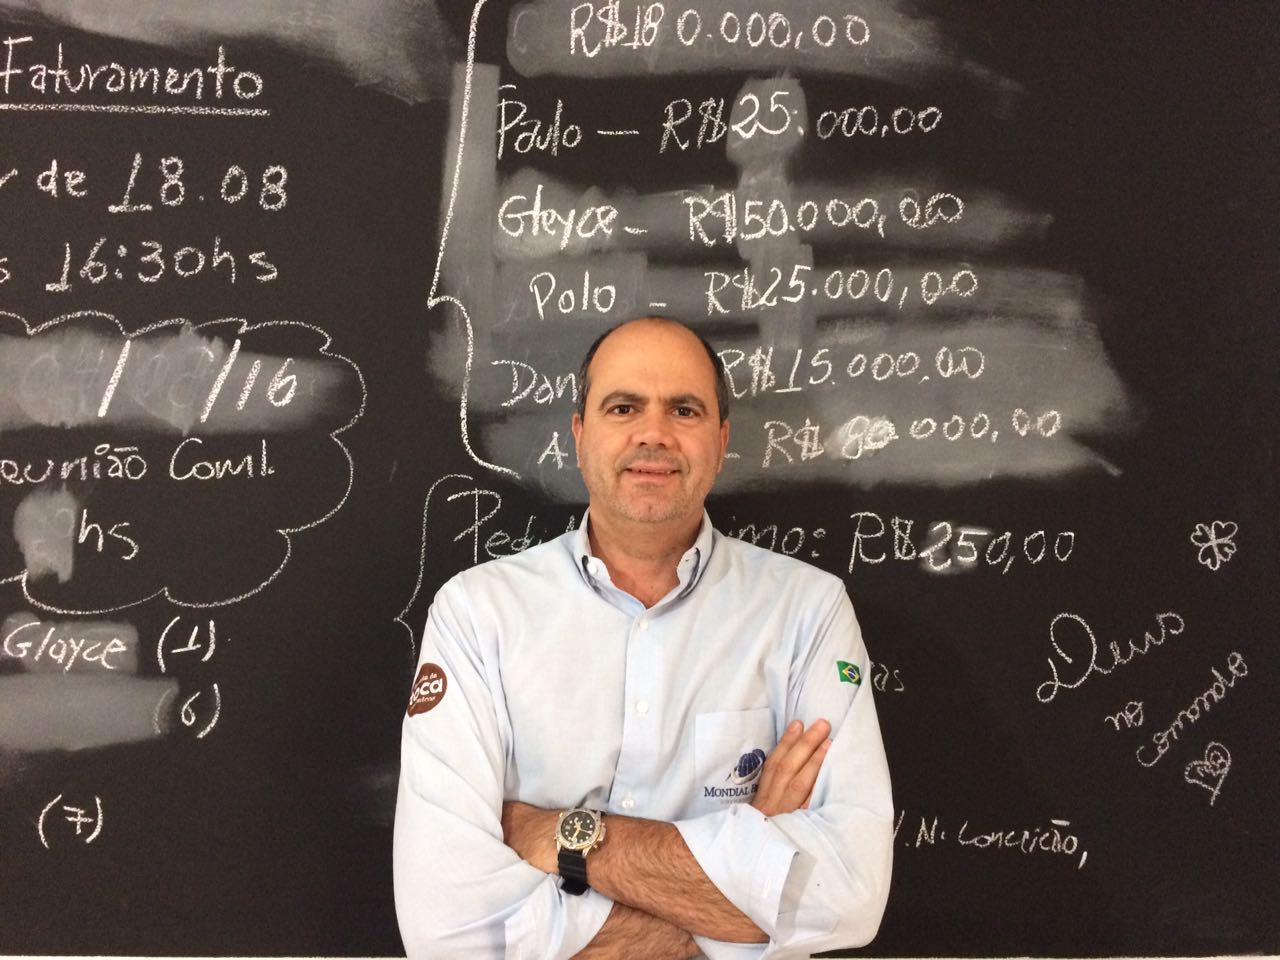 Alberto Gonçalves Neto, fundador da Mondial Brands, fala da dificuldade de encontrar investidor, da pressão por diversificar produtos, das limitações de ser pequeno, e compartilha algumas lições.